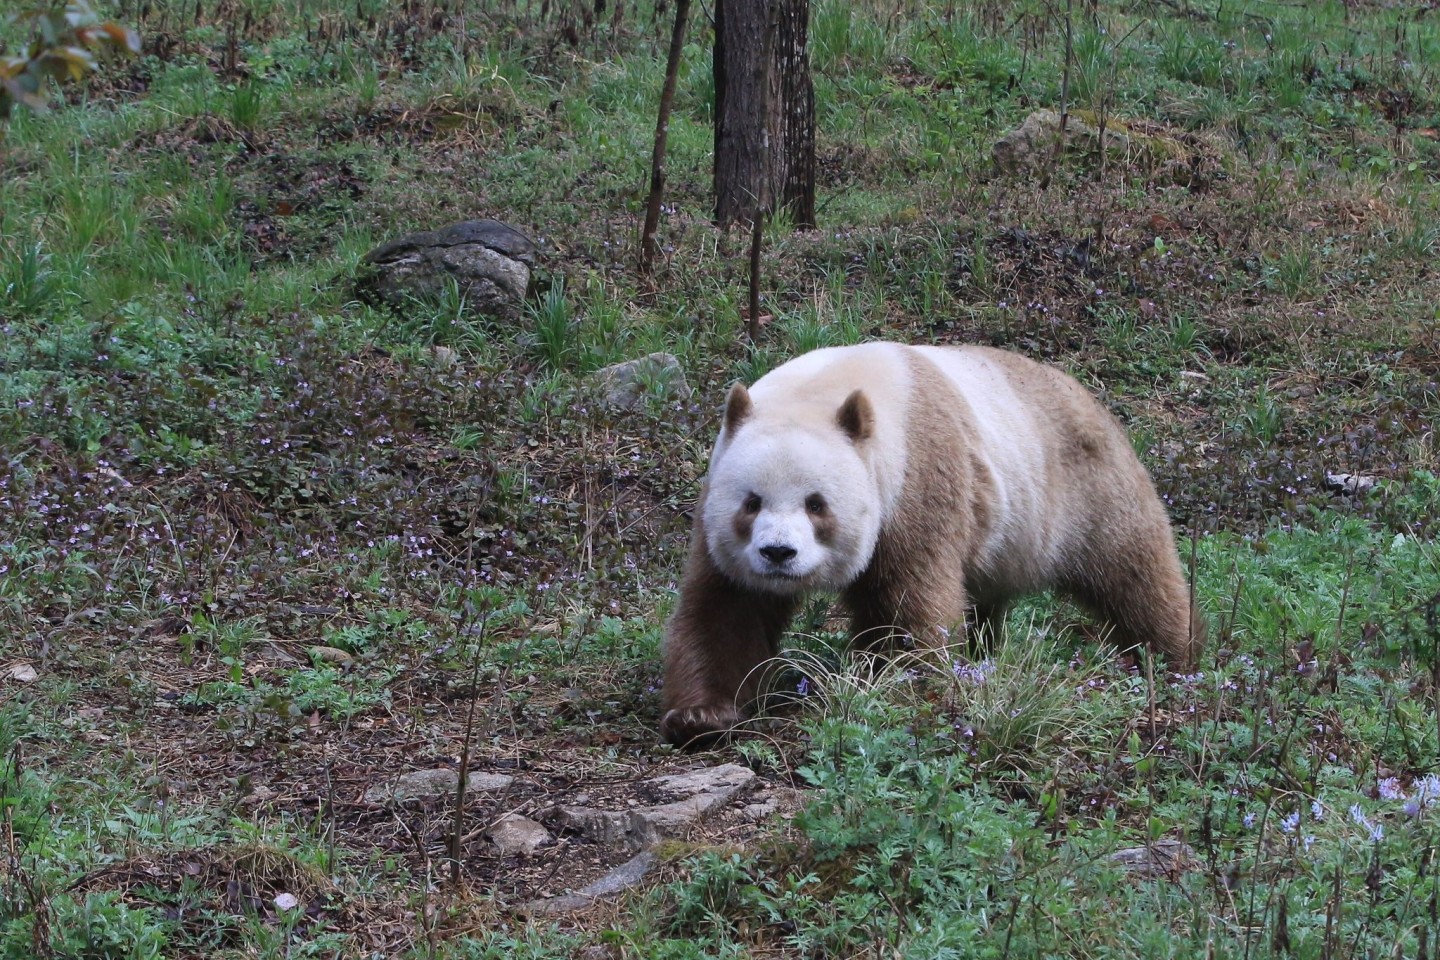 Qizai ist der einzige braune Panda, der in Gefangenschaft lebt.